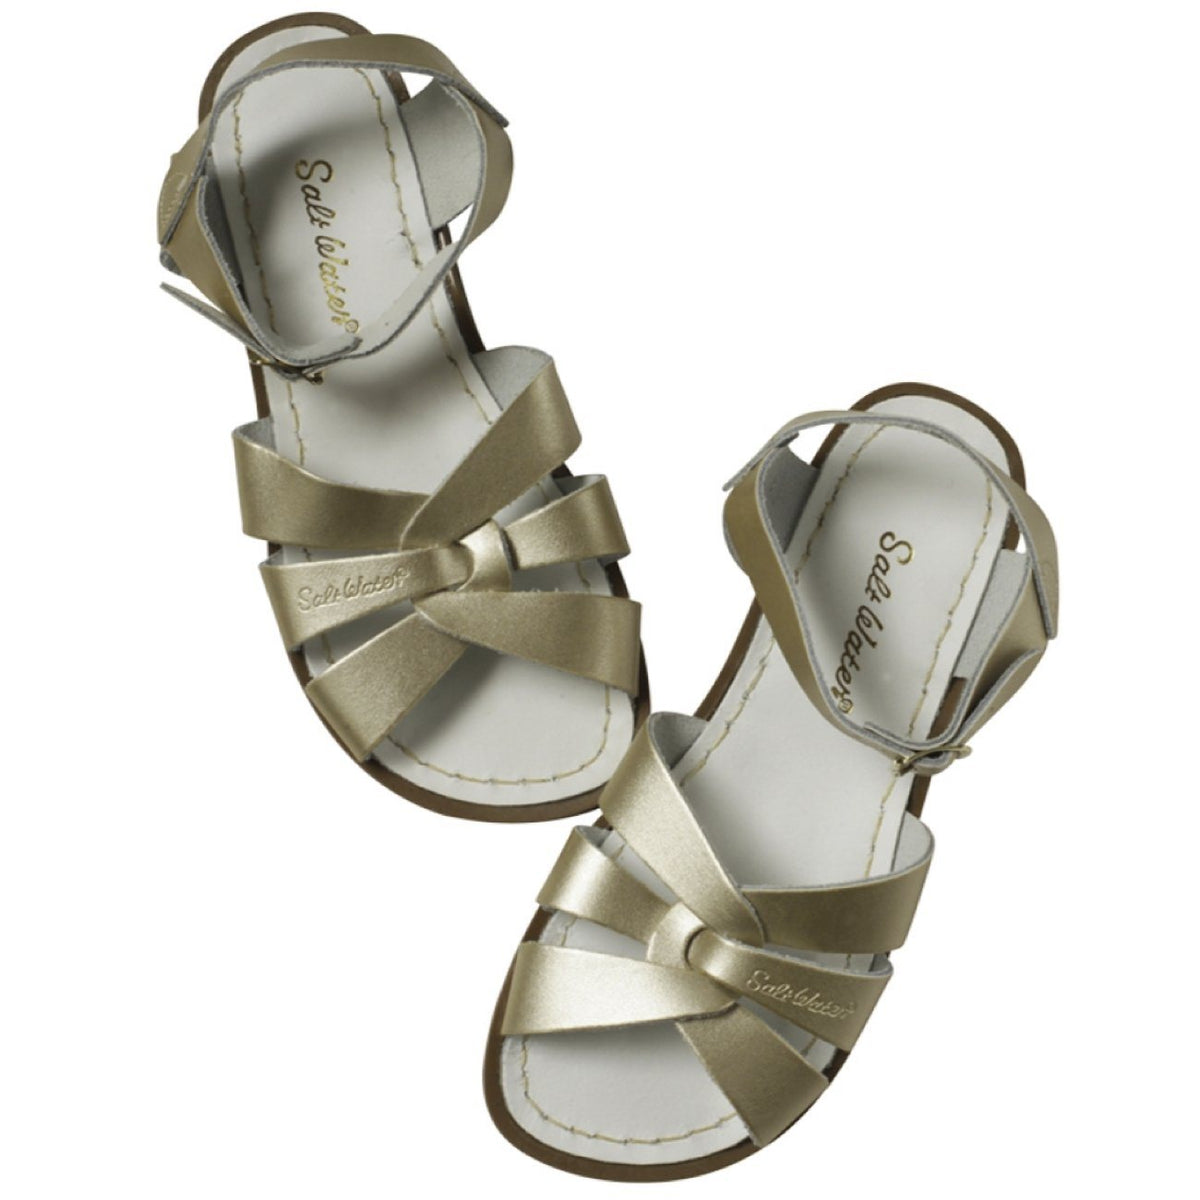 Salt Water Sandals, Original, Adults, Gold Sandals Salt Water Sandals Gold Adult 5 / Aus Womens 7 